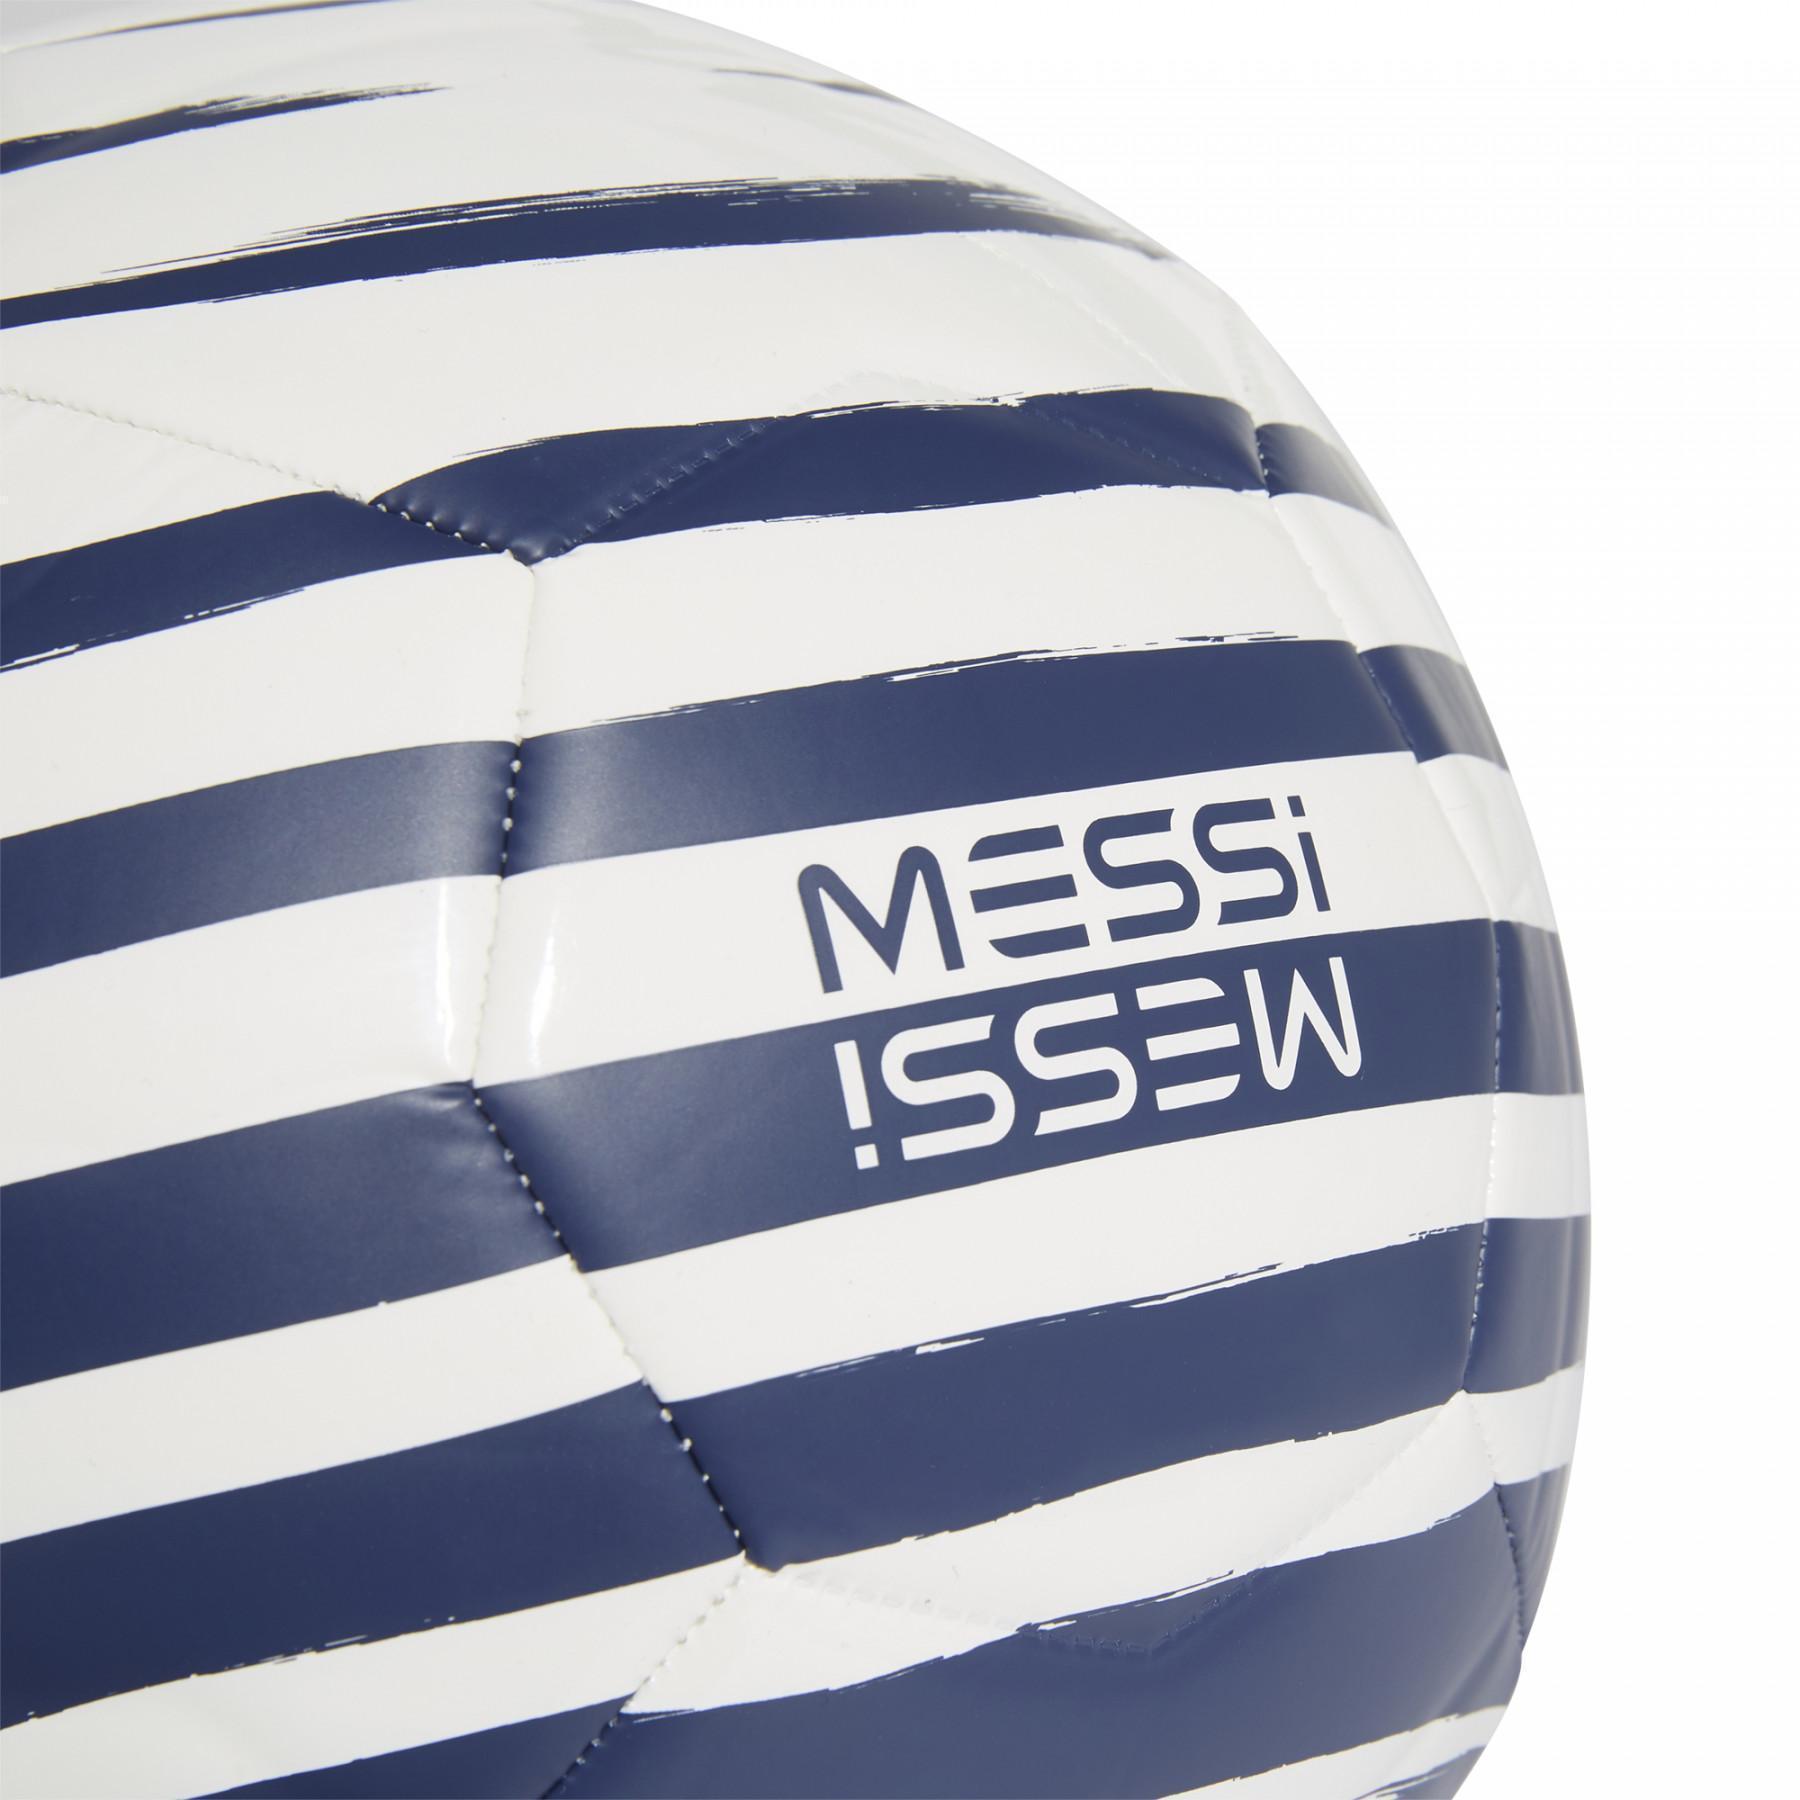 Balão adidas Messi Club